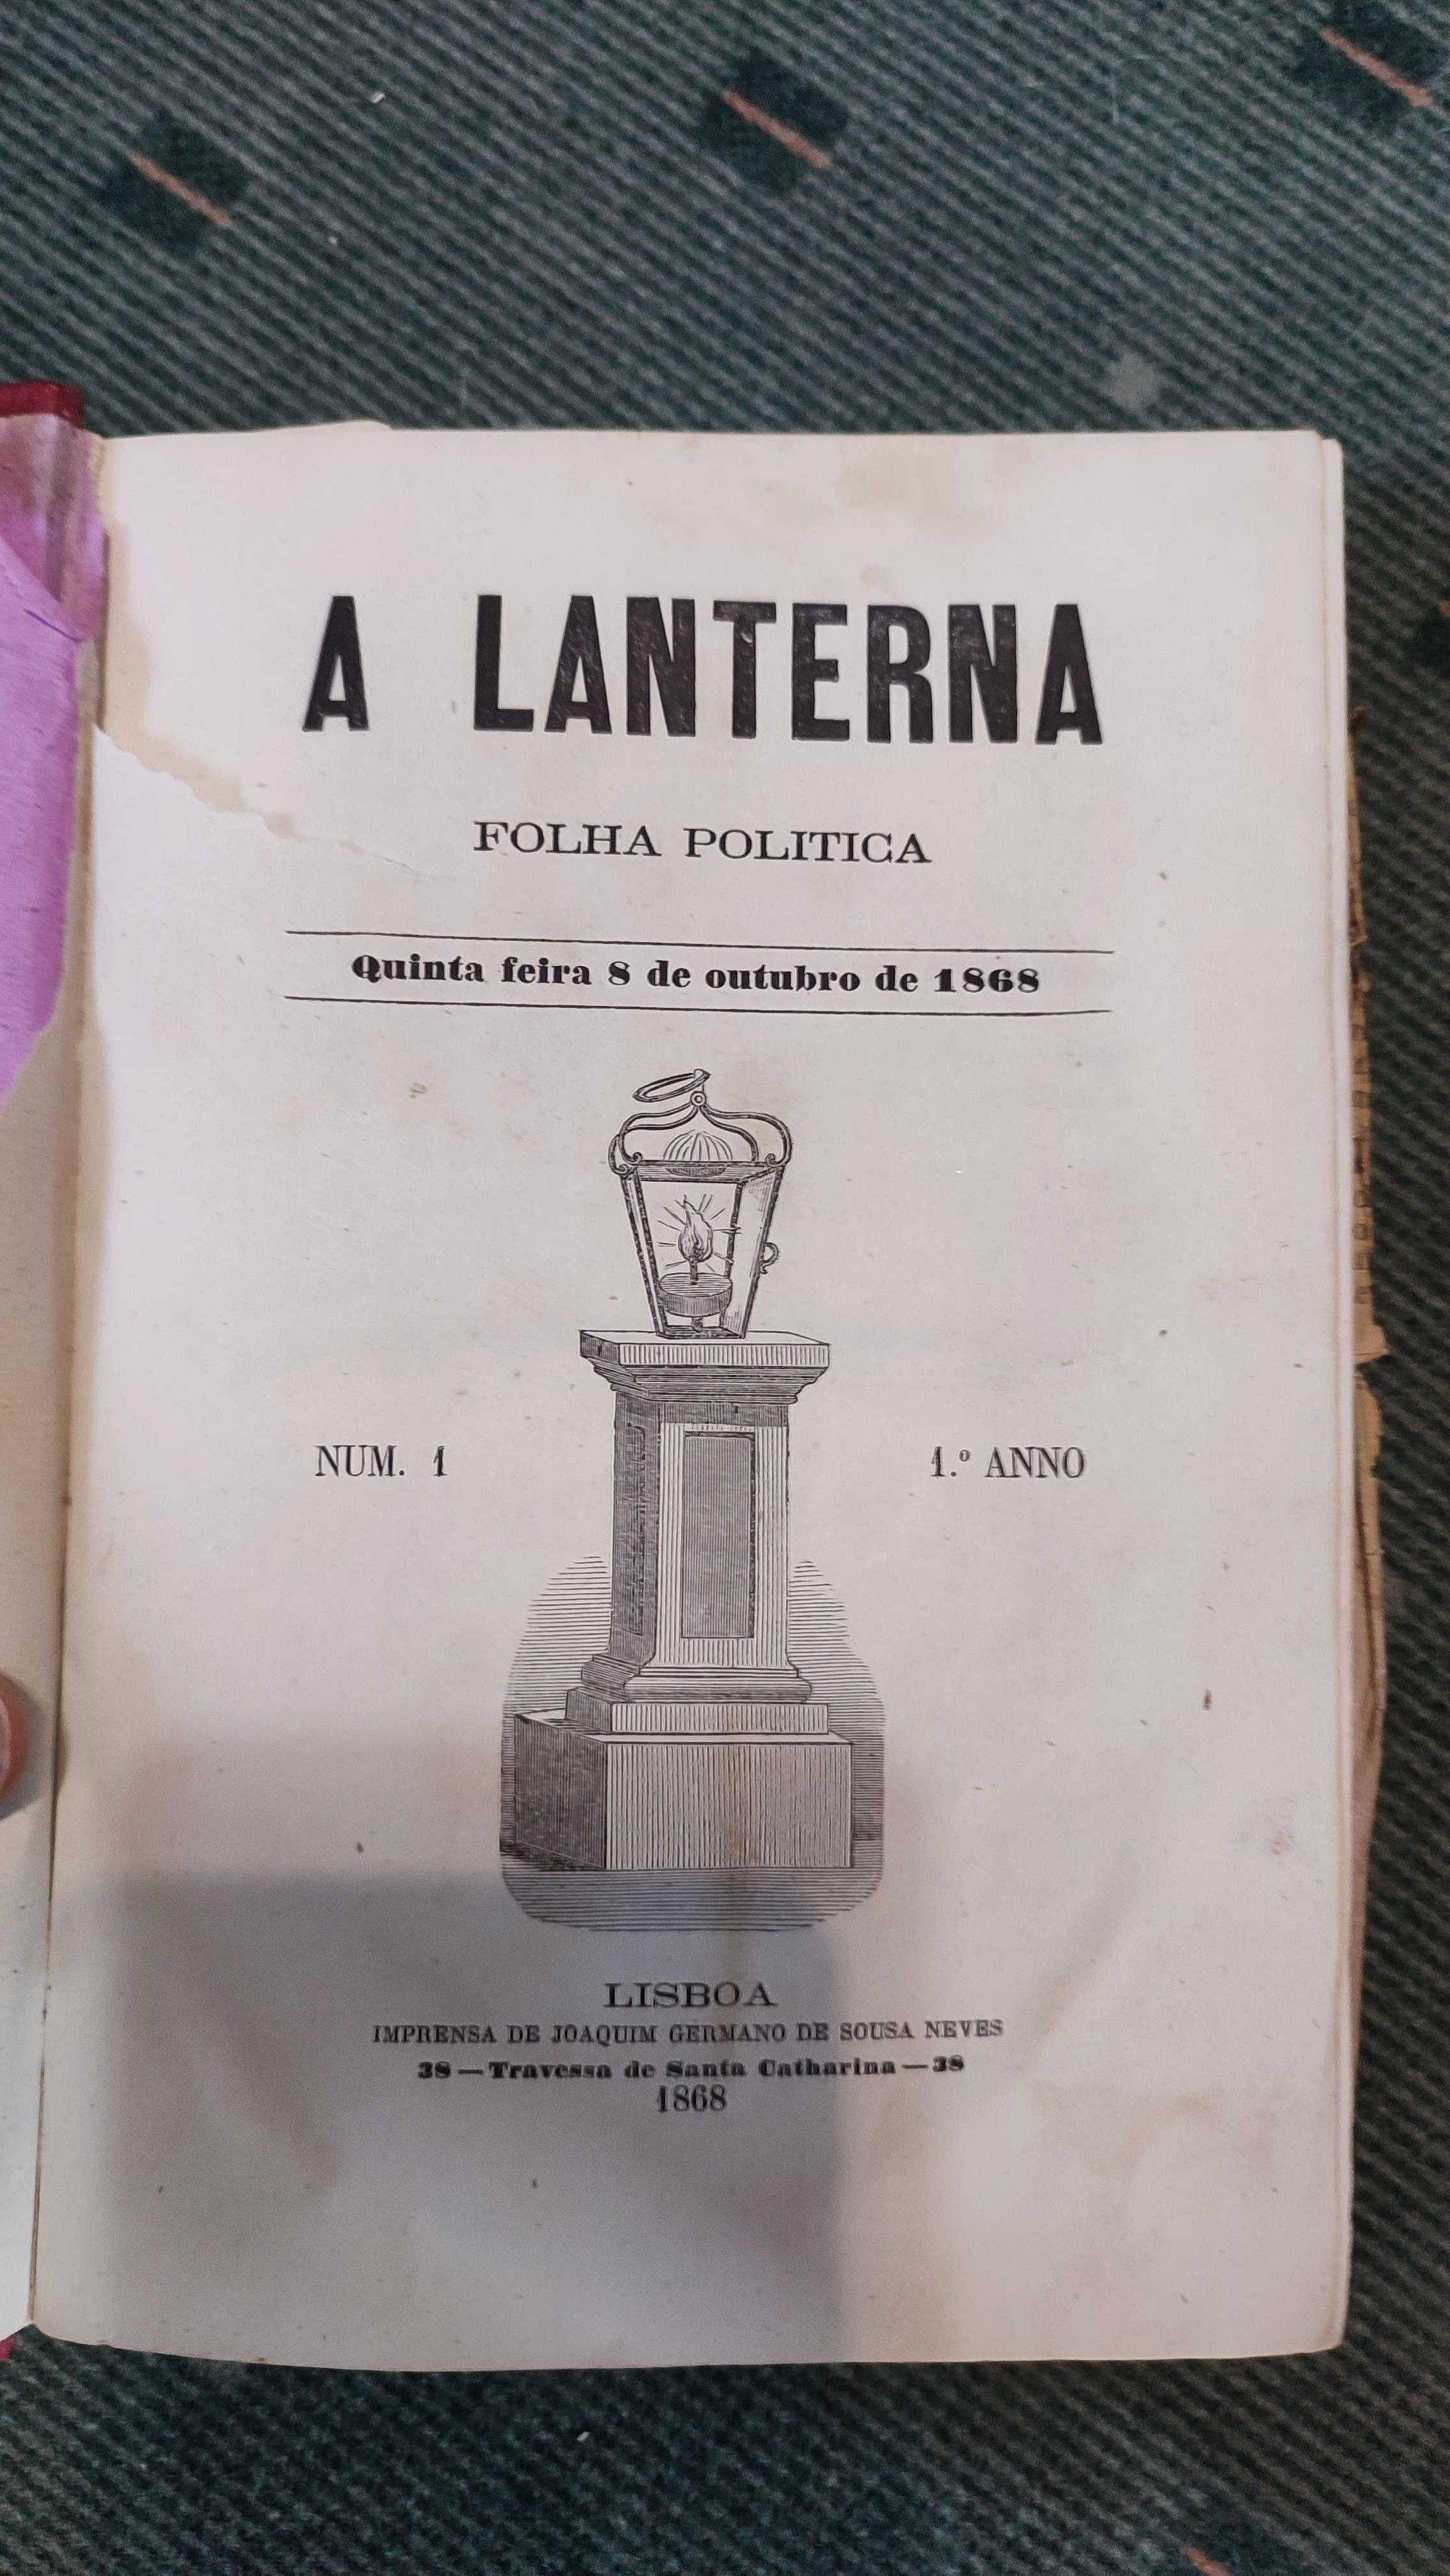 A Lanterna -Publicação Republicana - 9 volumes (1868 a 1873)